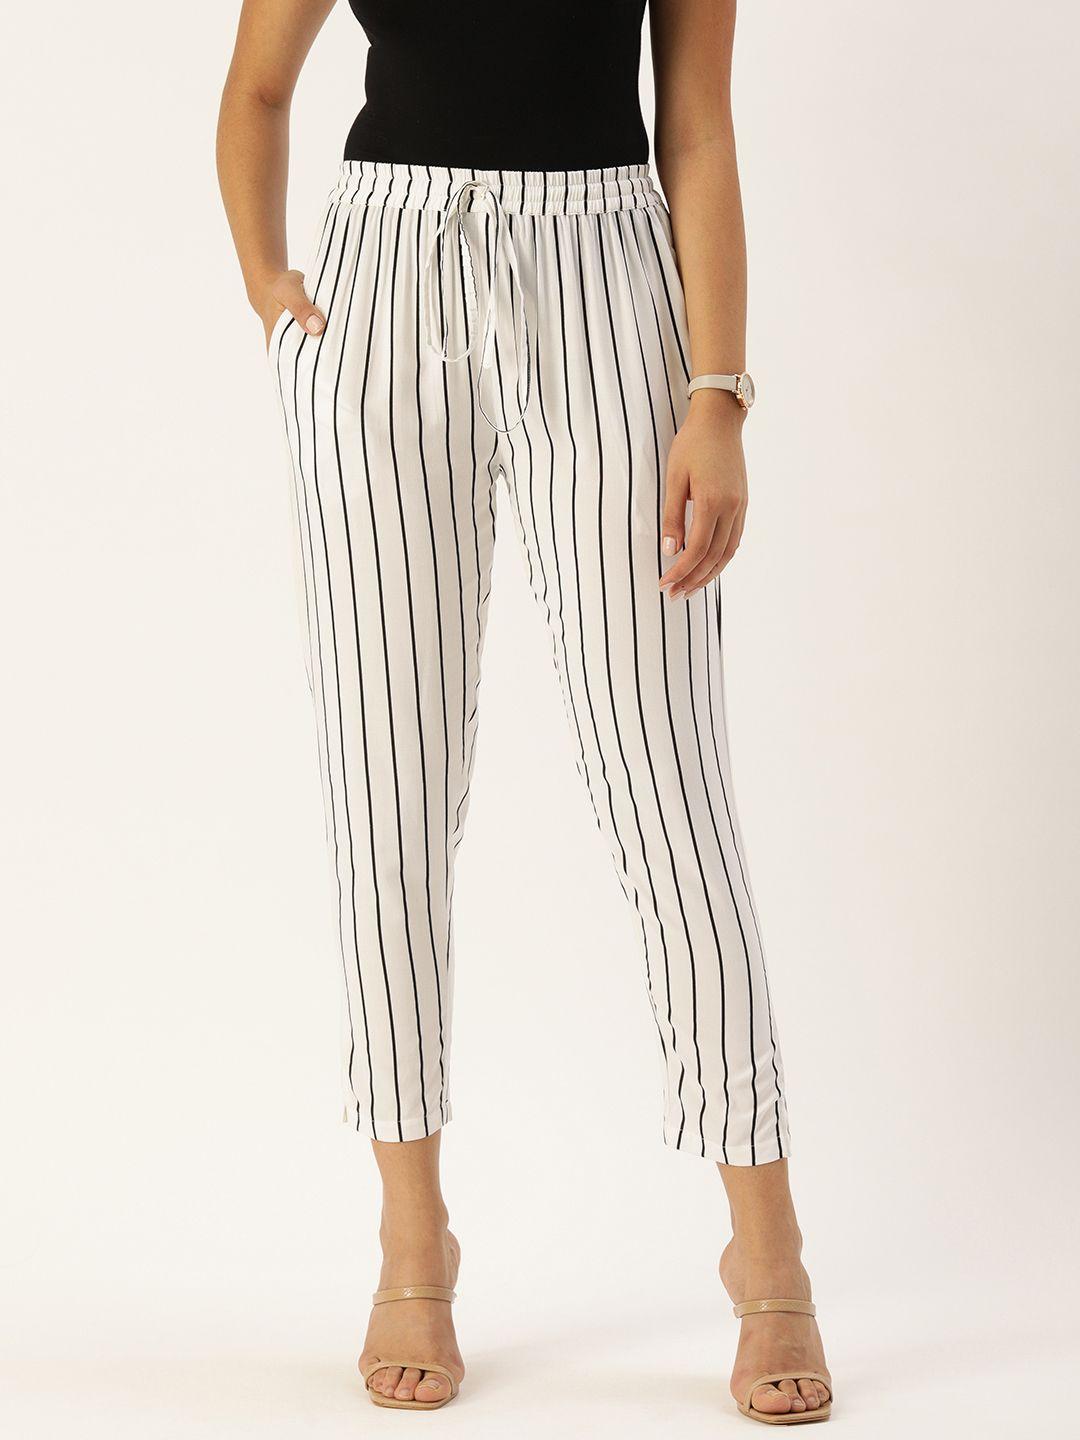 amukti women white & black striped cropped trousers